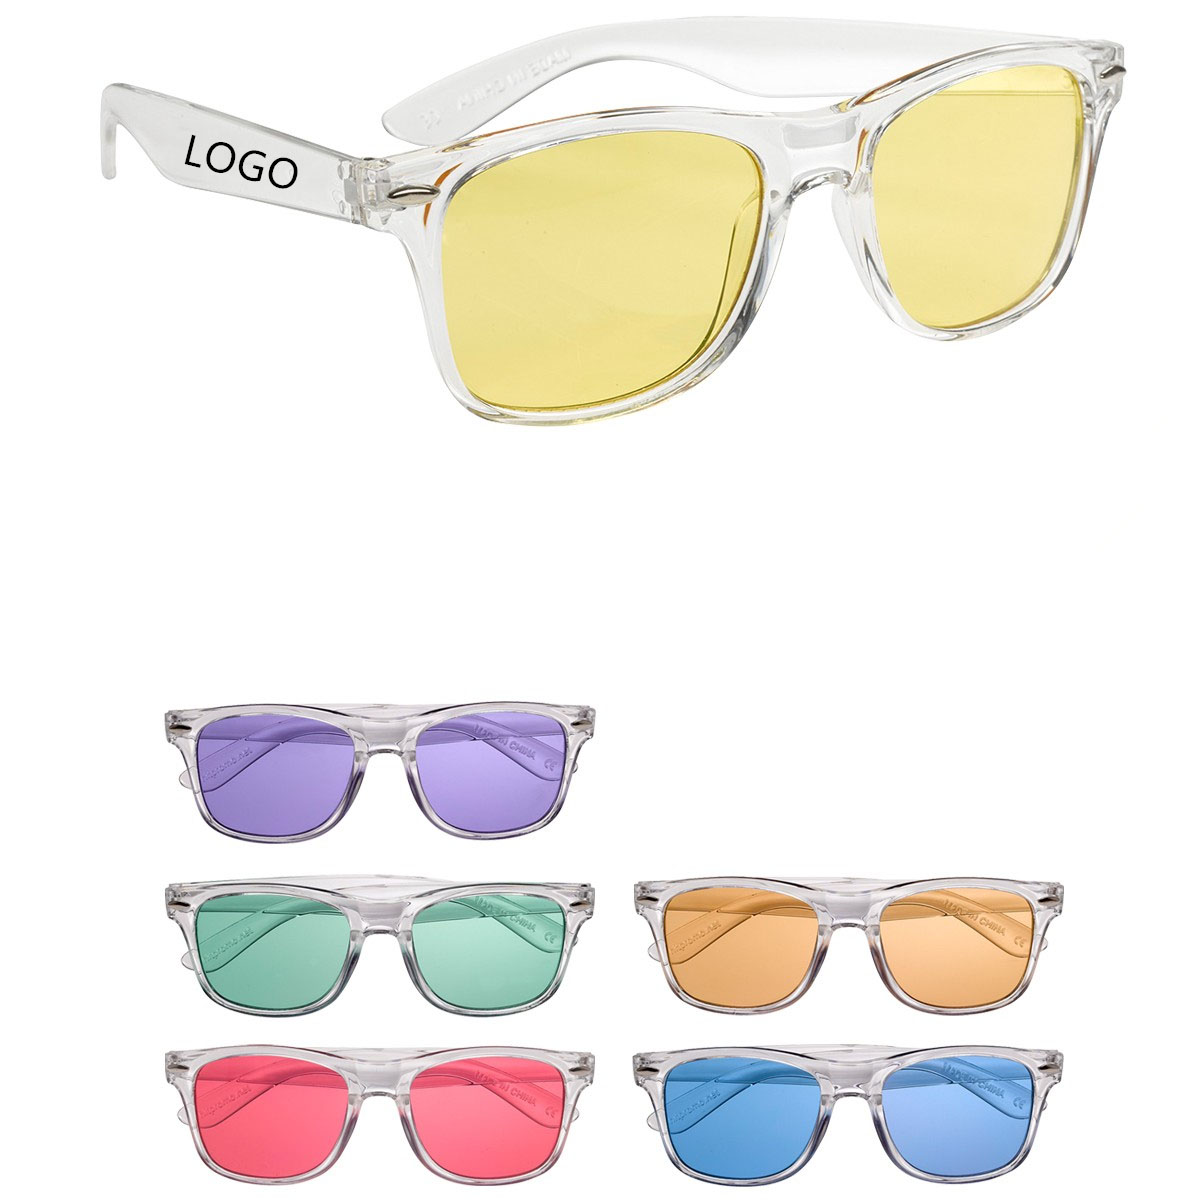 GL-KVL1020 Crystalline Sunglasses